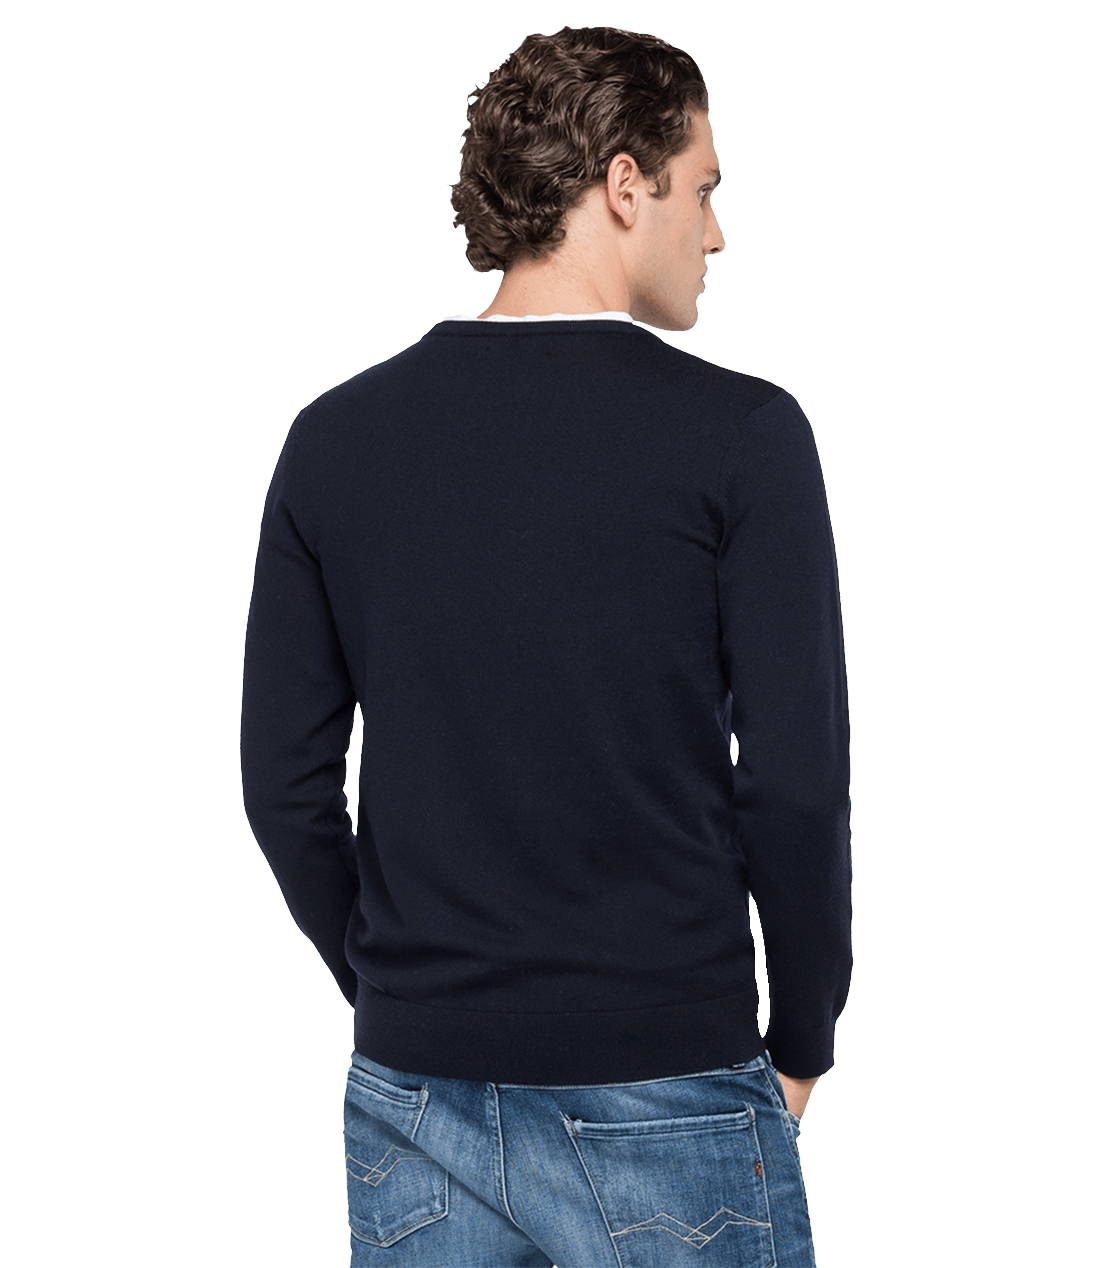 Crewneck Sweater In Merino Wool